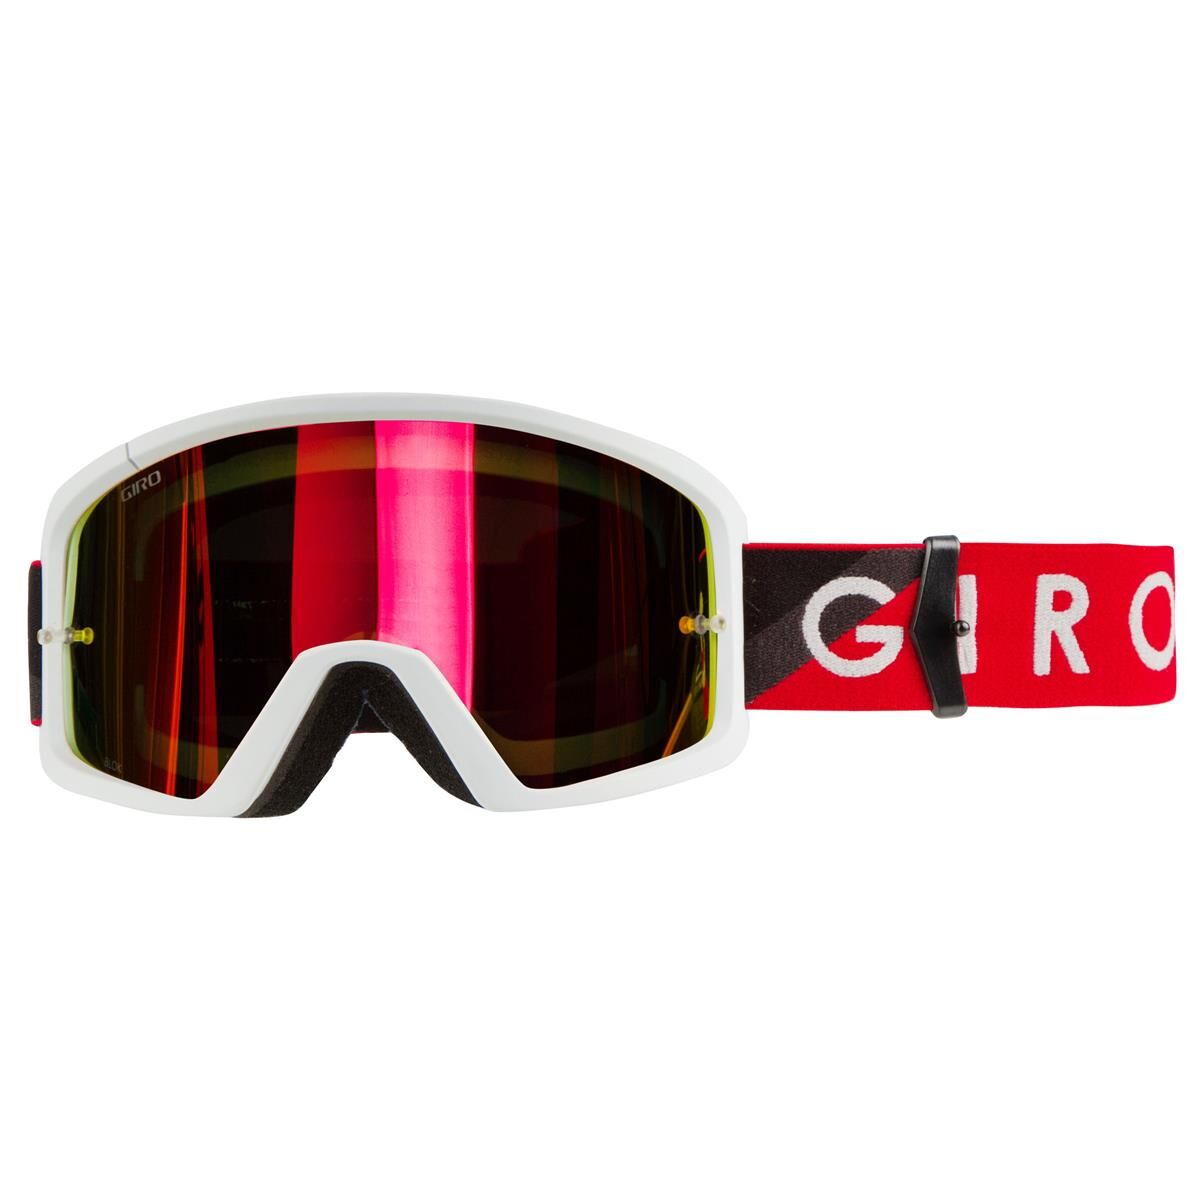 Giro Masque Blok - Taille unique - Rouge